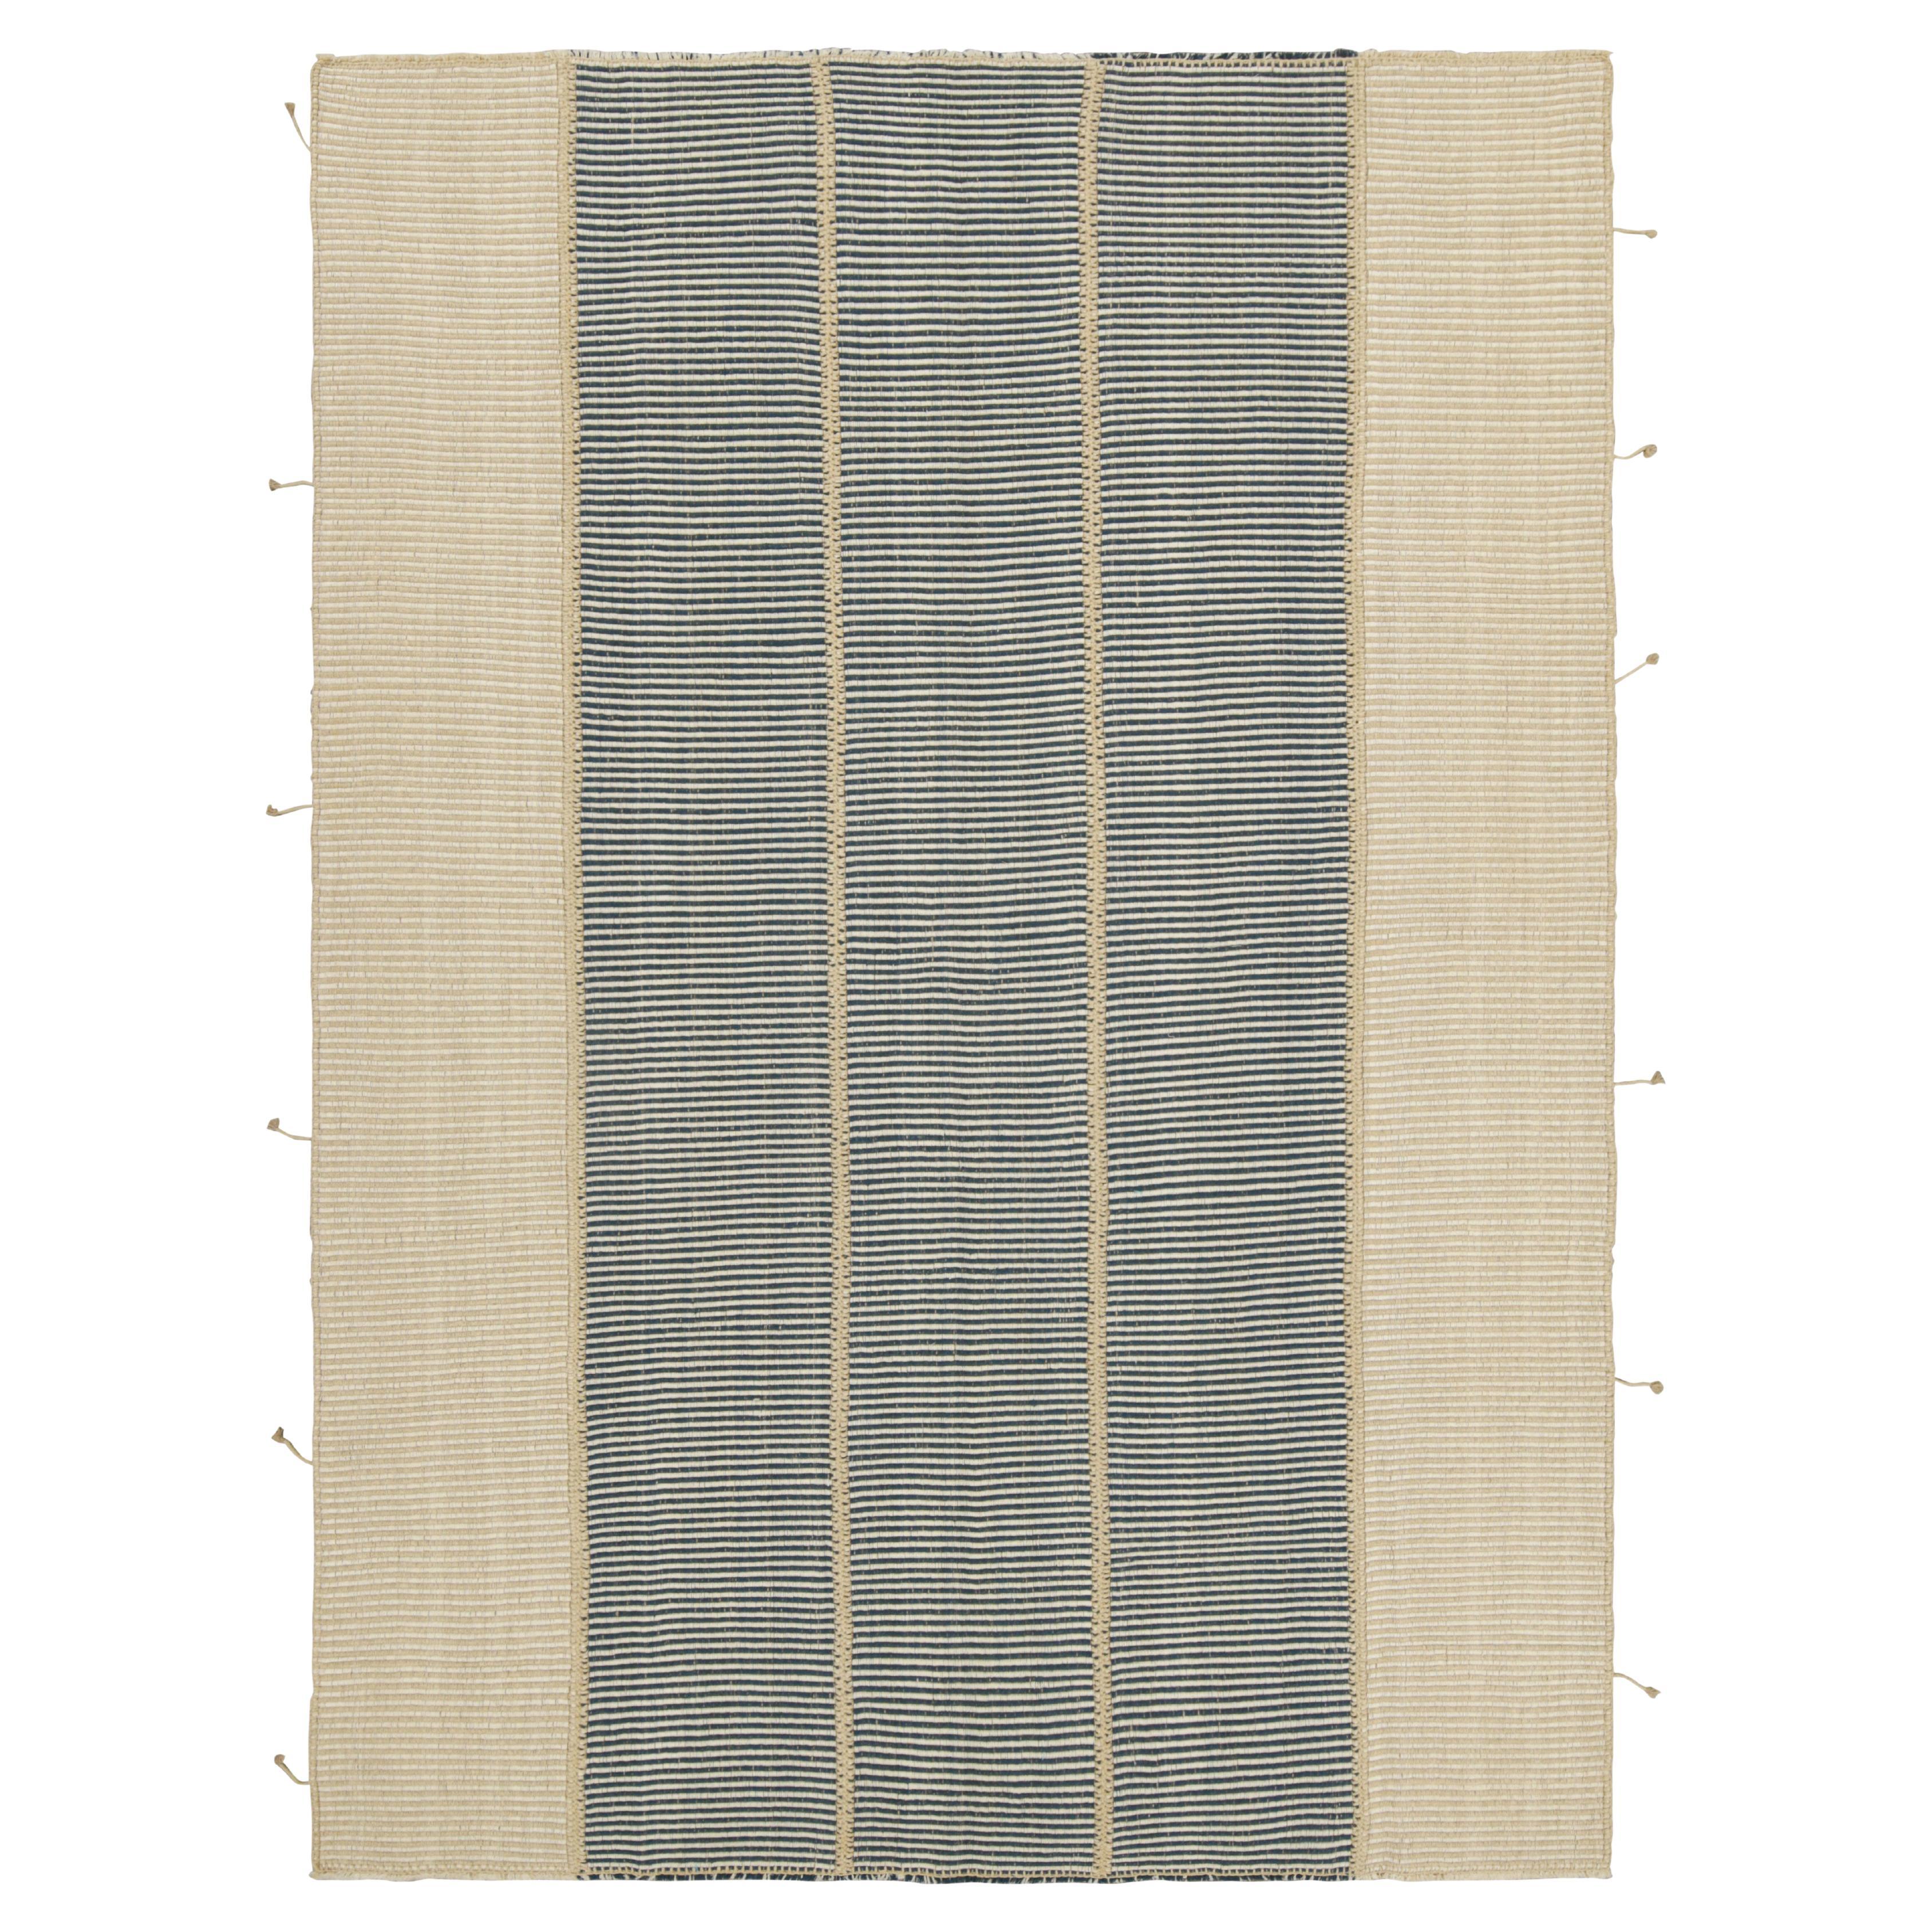 Rug & Kilim's Contemporary Kilim in Beige and Blue Textural Stripes (Kilim contemporain à rayures texturées beige et bleu)